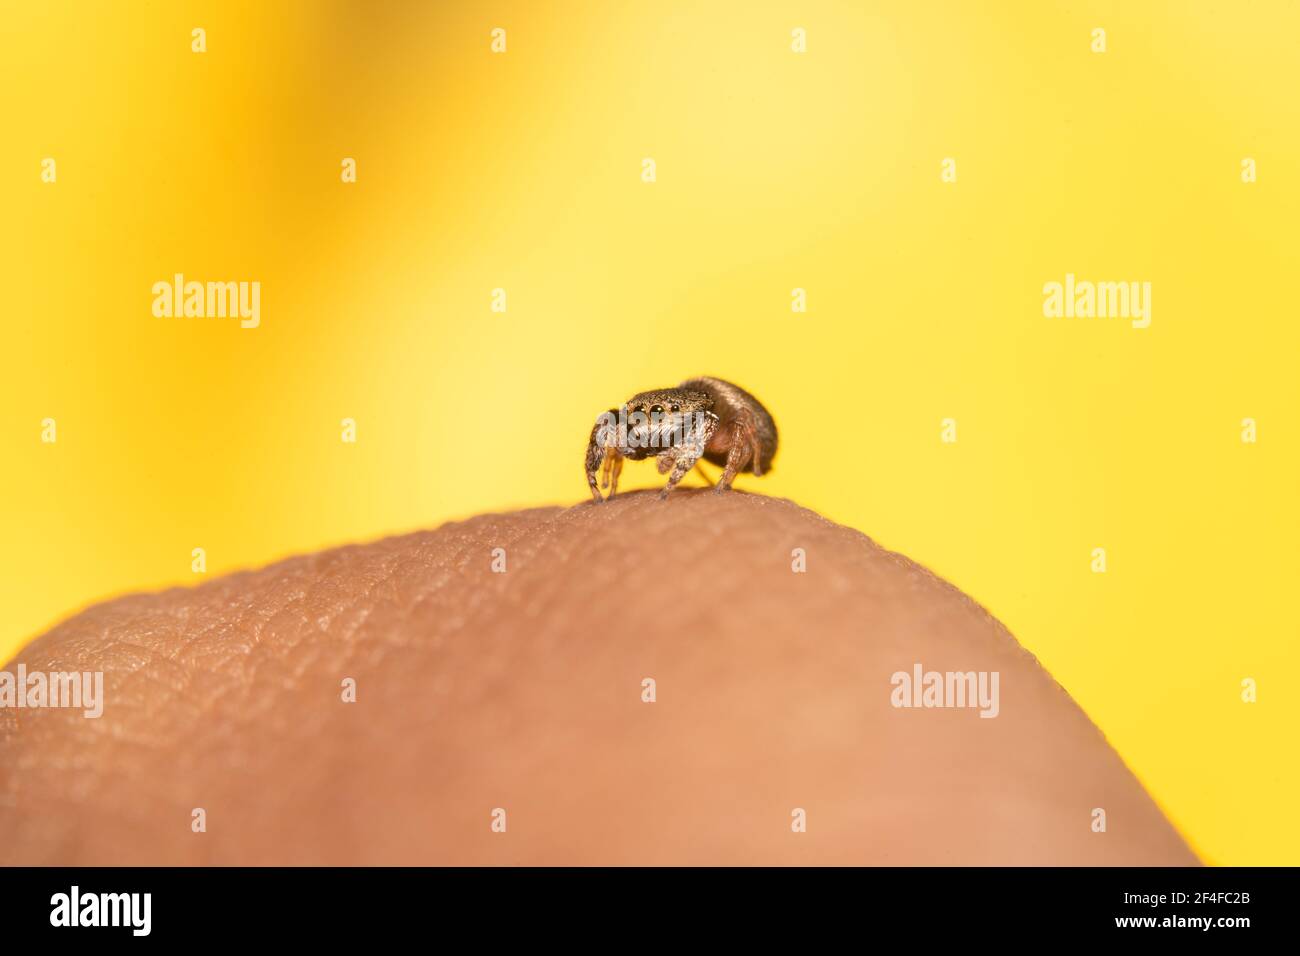 Petite araignée sautant brune assise sur un doigt Banque D'Images